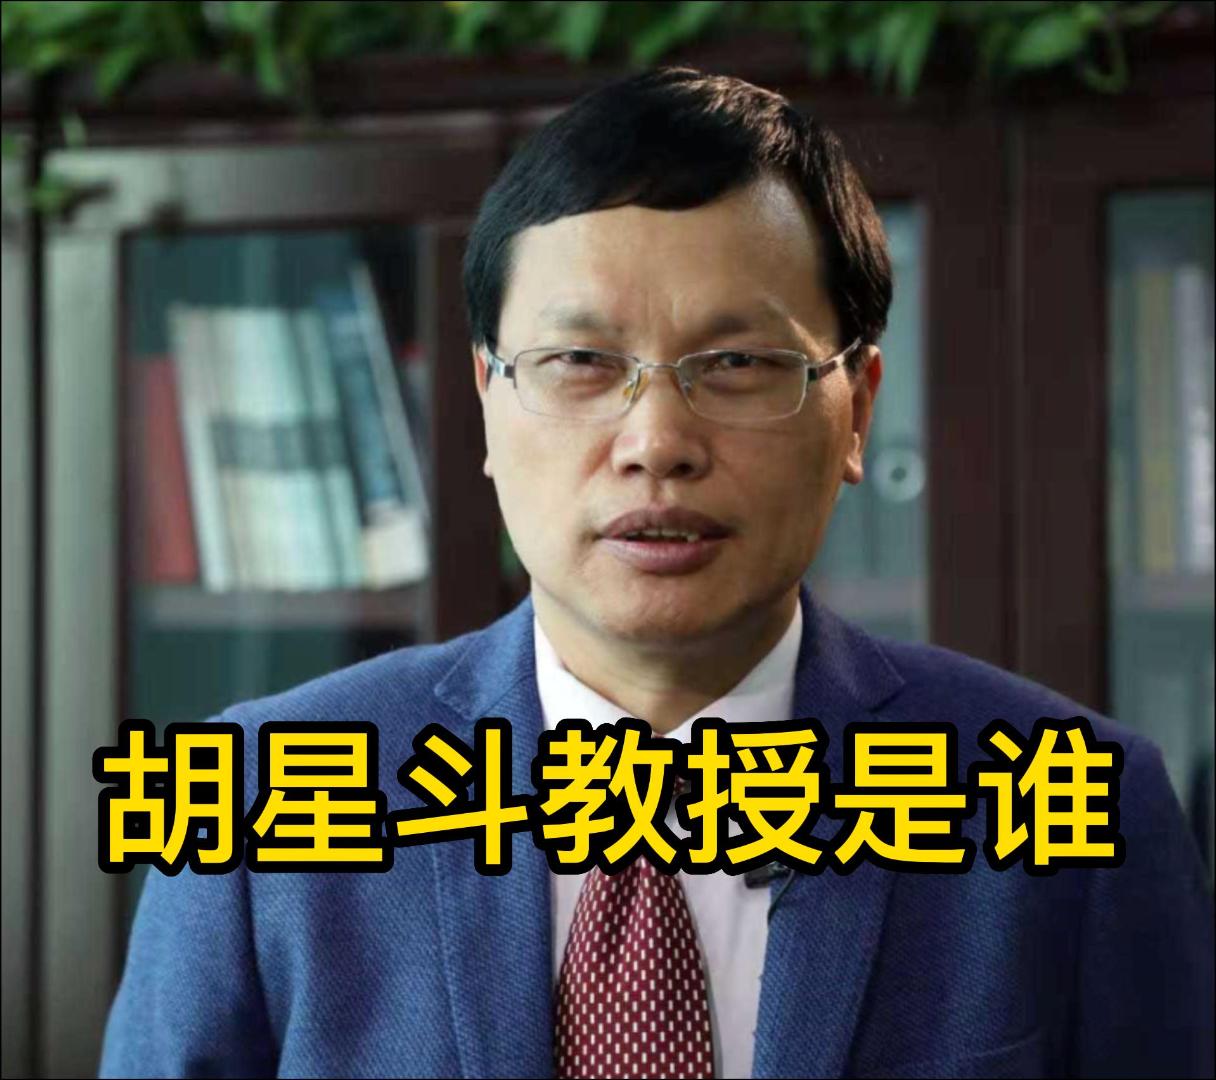 弱势群体经济学专家胡星斗教授